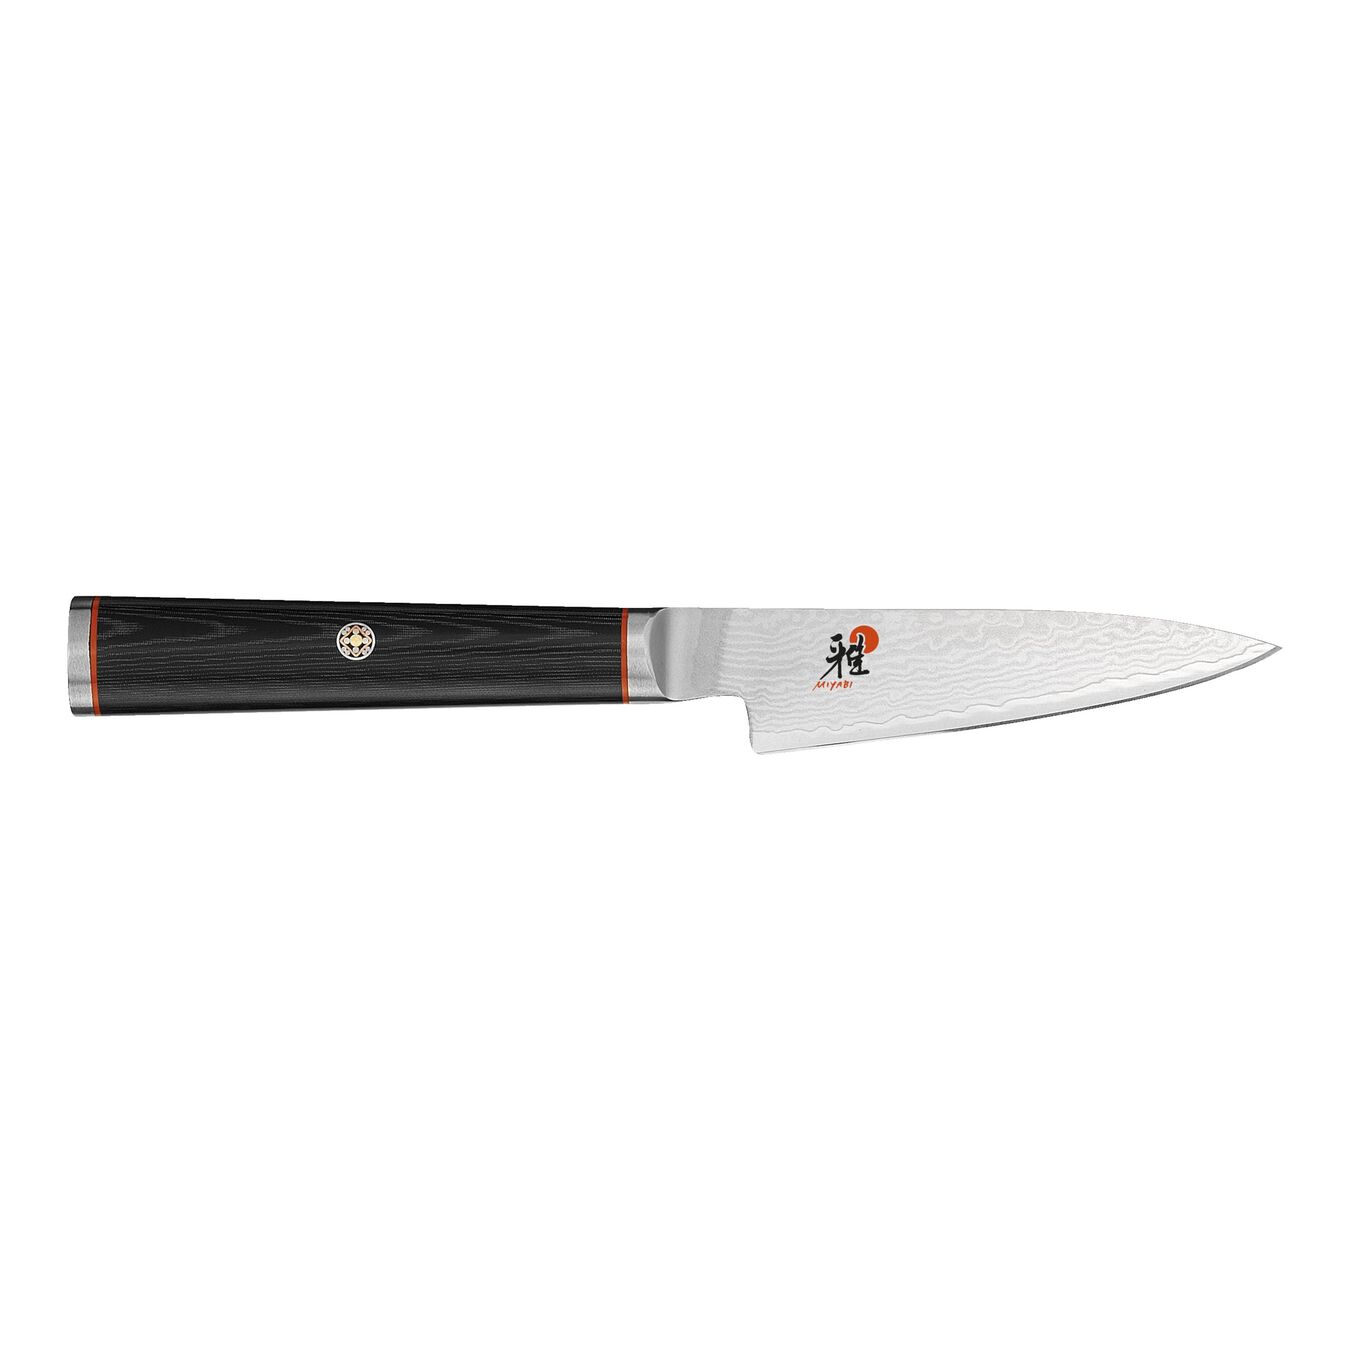 3.5-inch micarta Paring Knife,,large 1